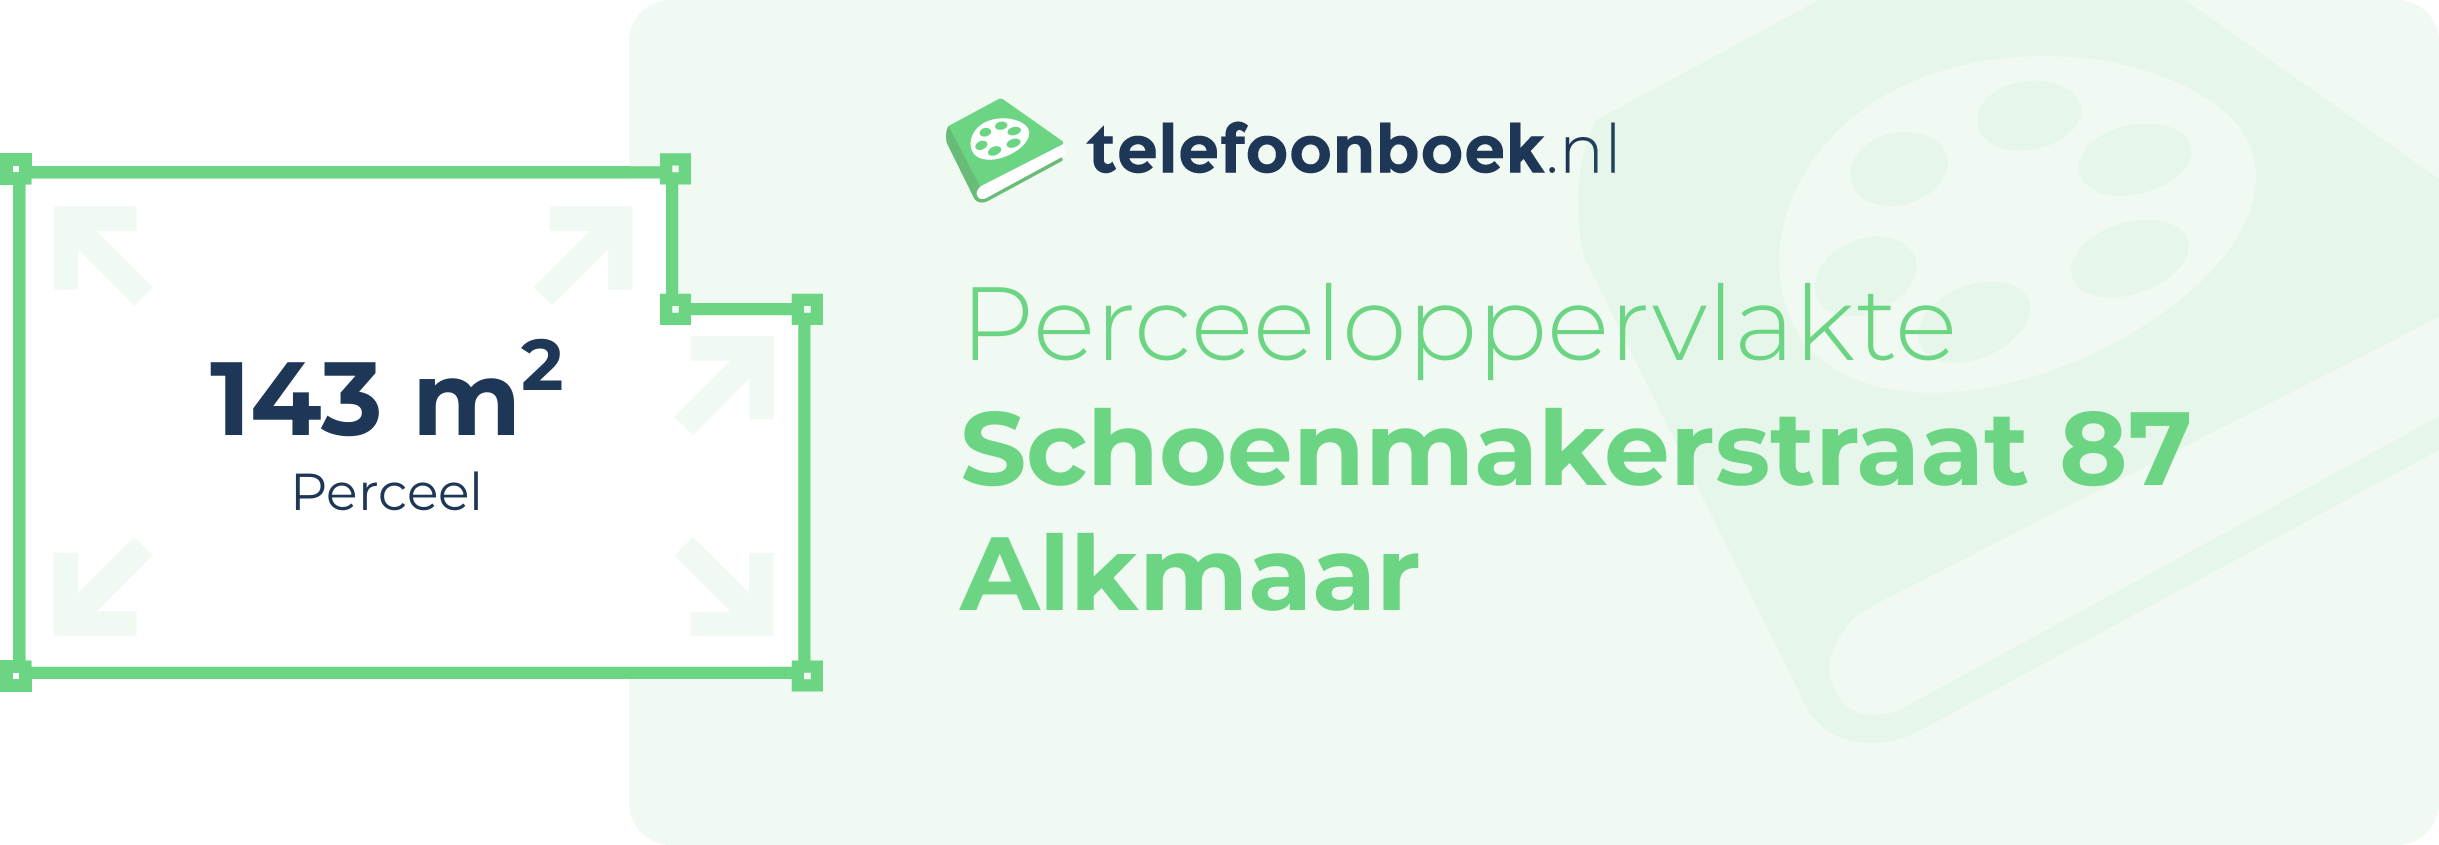 Perceeloppervlakte Schoenmakerstraat 87 Alkmaar